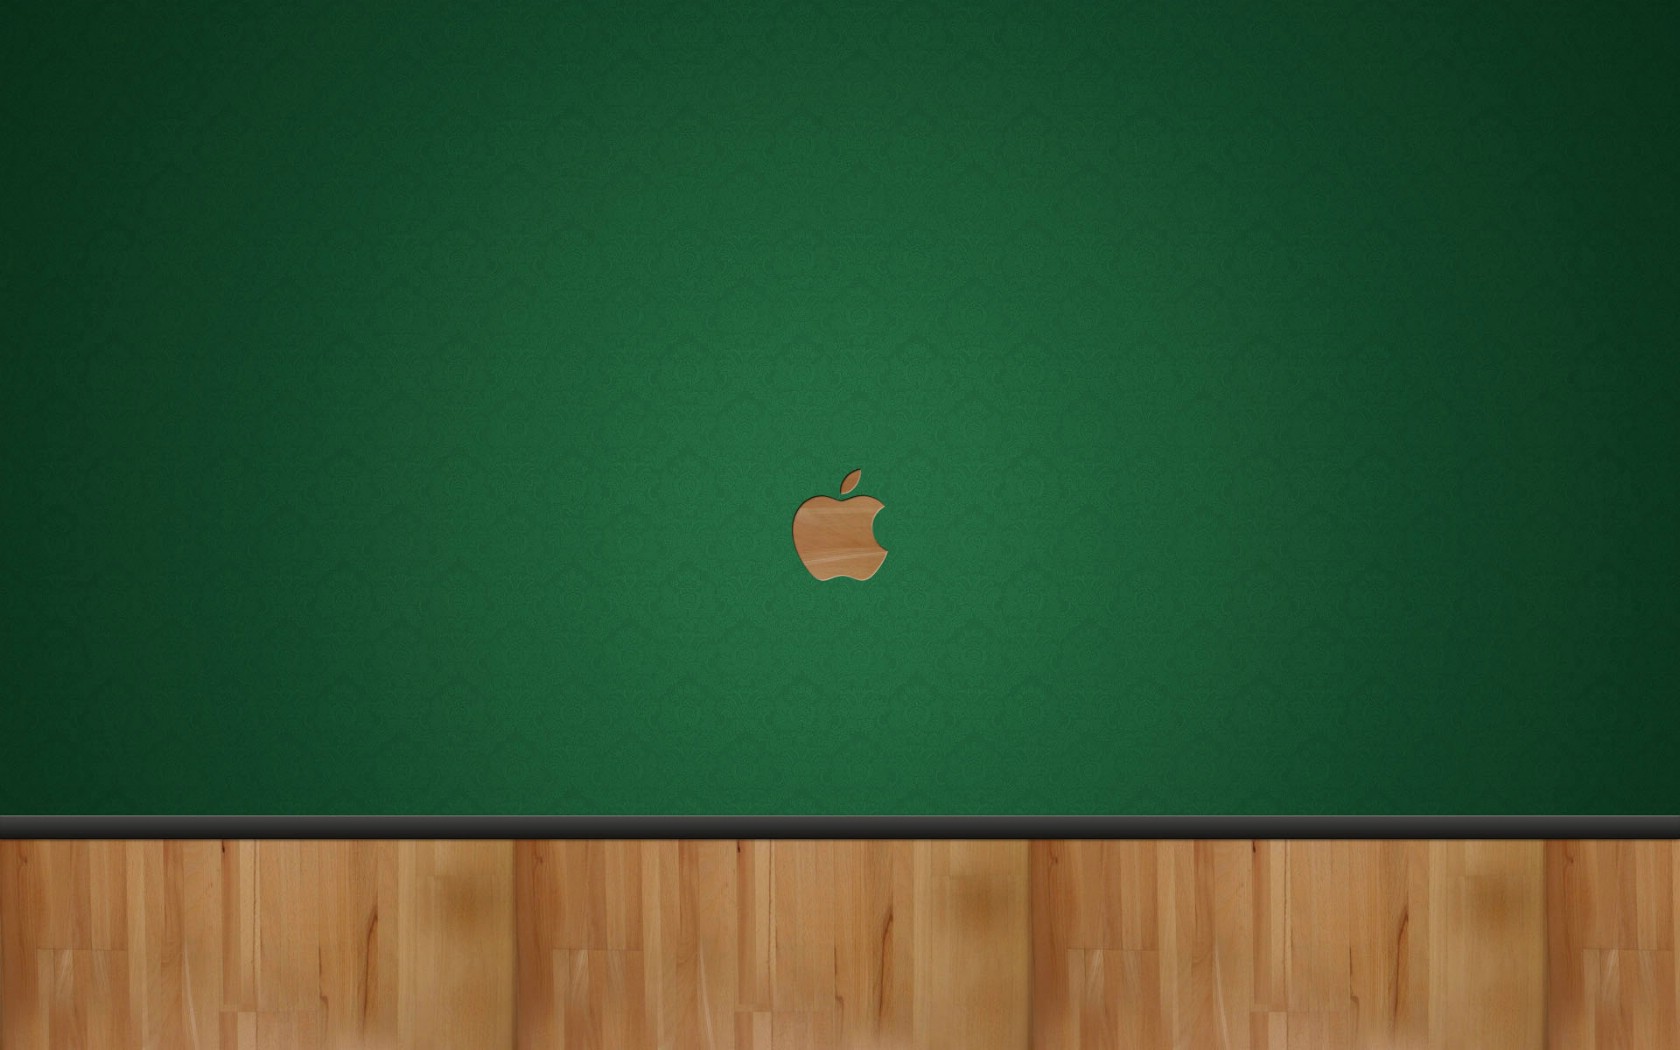 壁纸1680x1050Apple主题 49 15壁纸 Apple主题壁纸 Apple主题图片 Apple主题素材 系统壁纸 系统图库 系统图片素材桌面壁纸